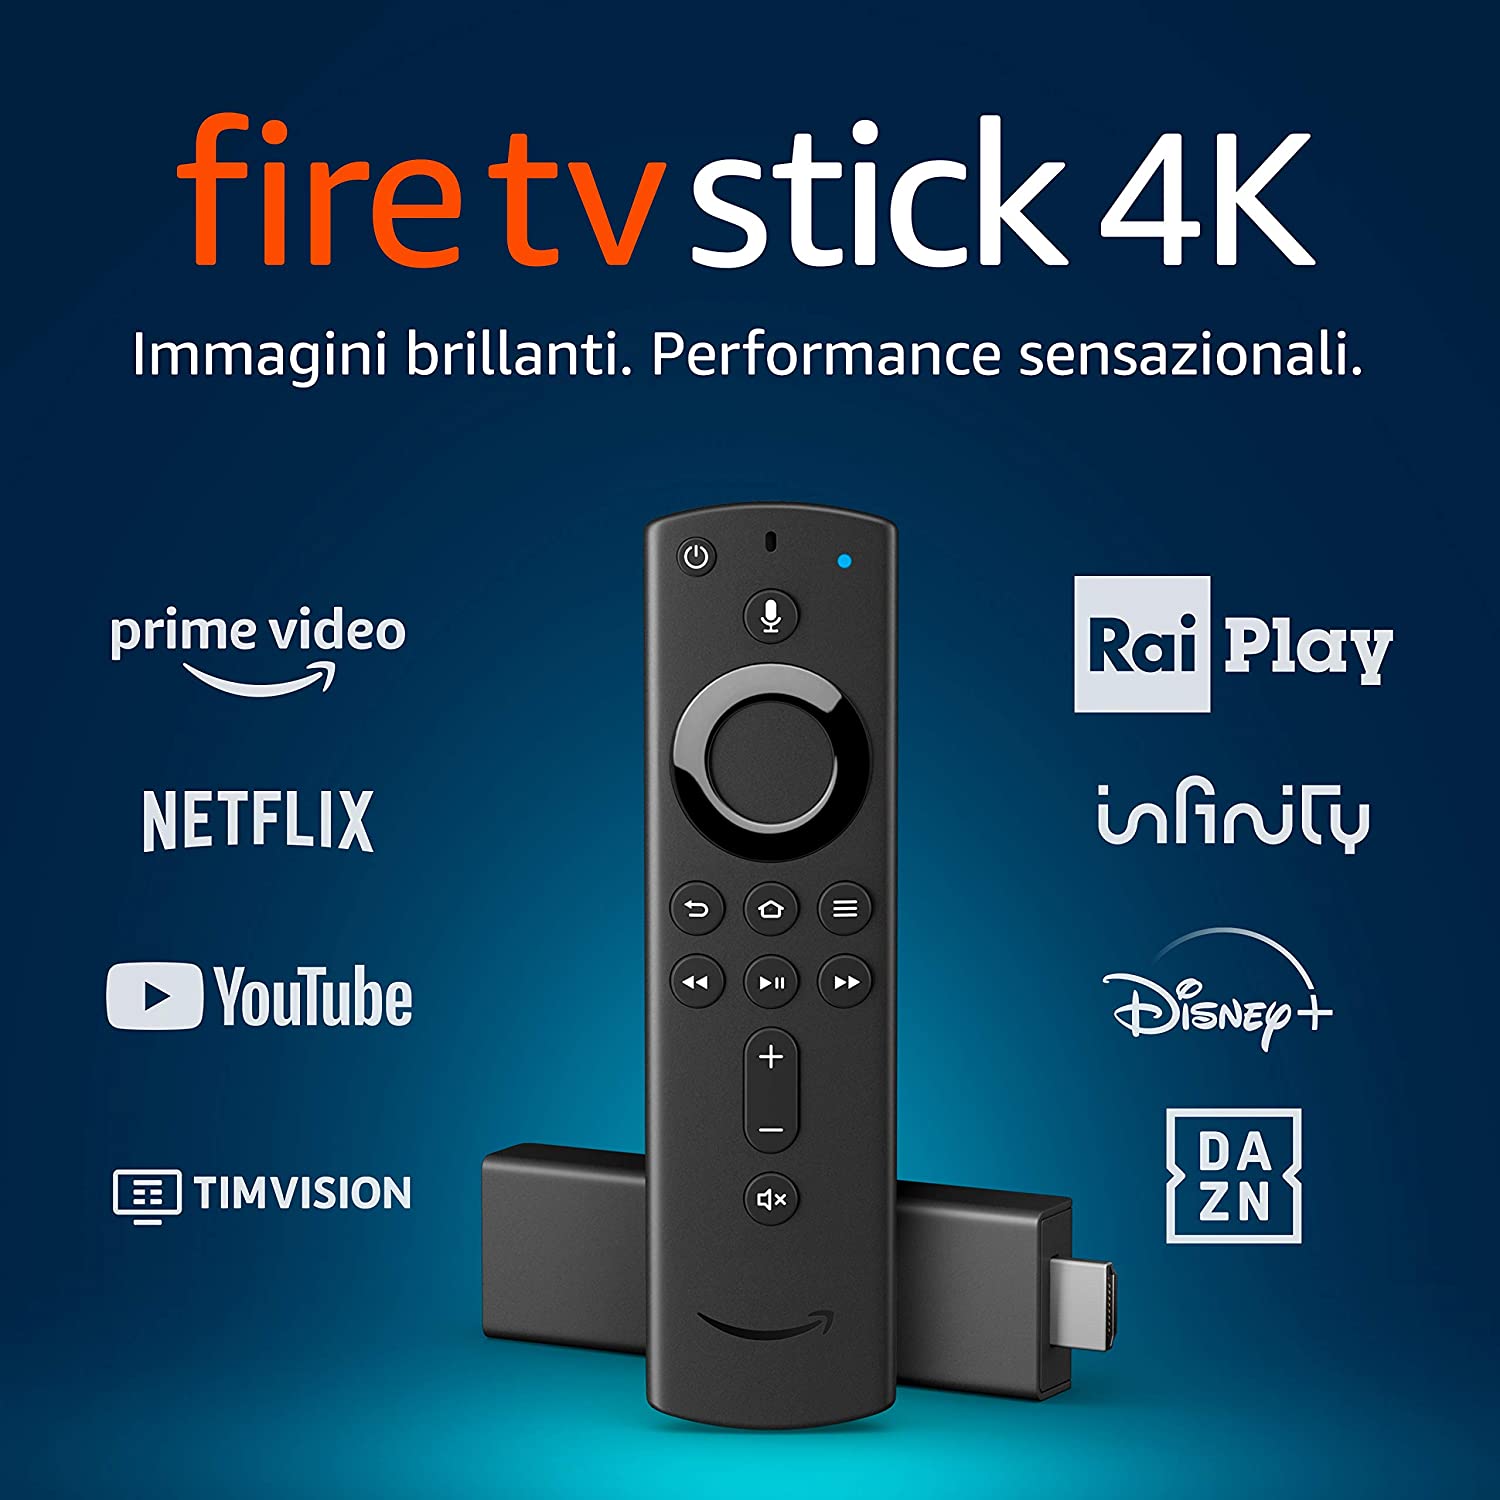 Fire TV Stick 4K Ultra HD con telecomando vocale Alexa di ultima